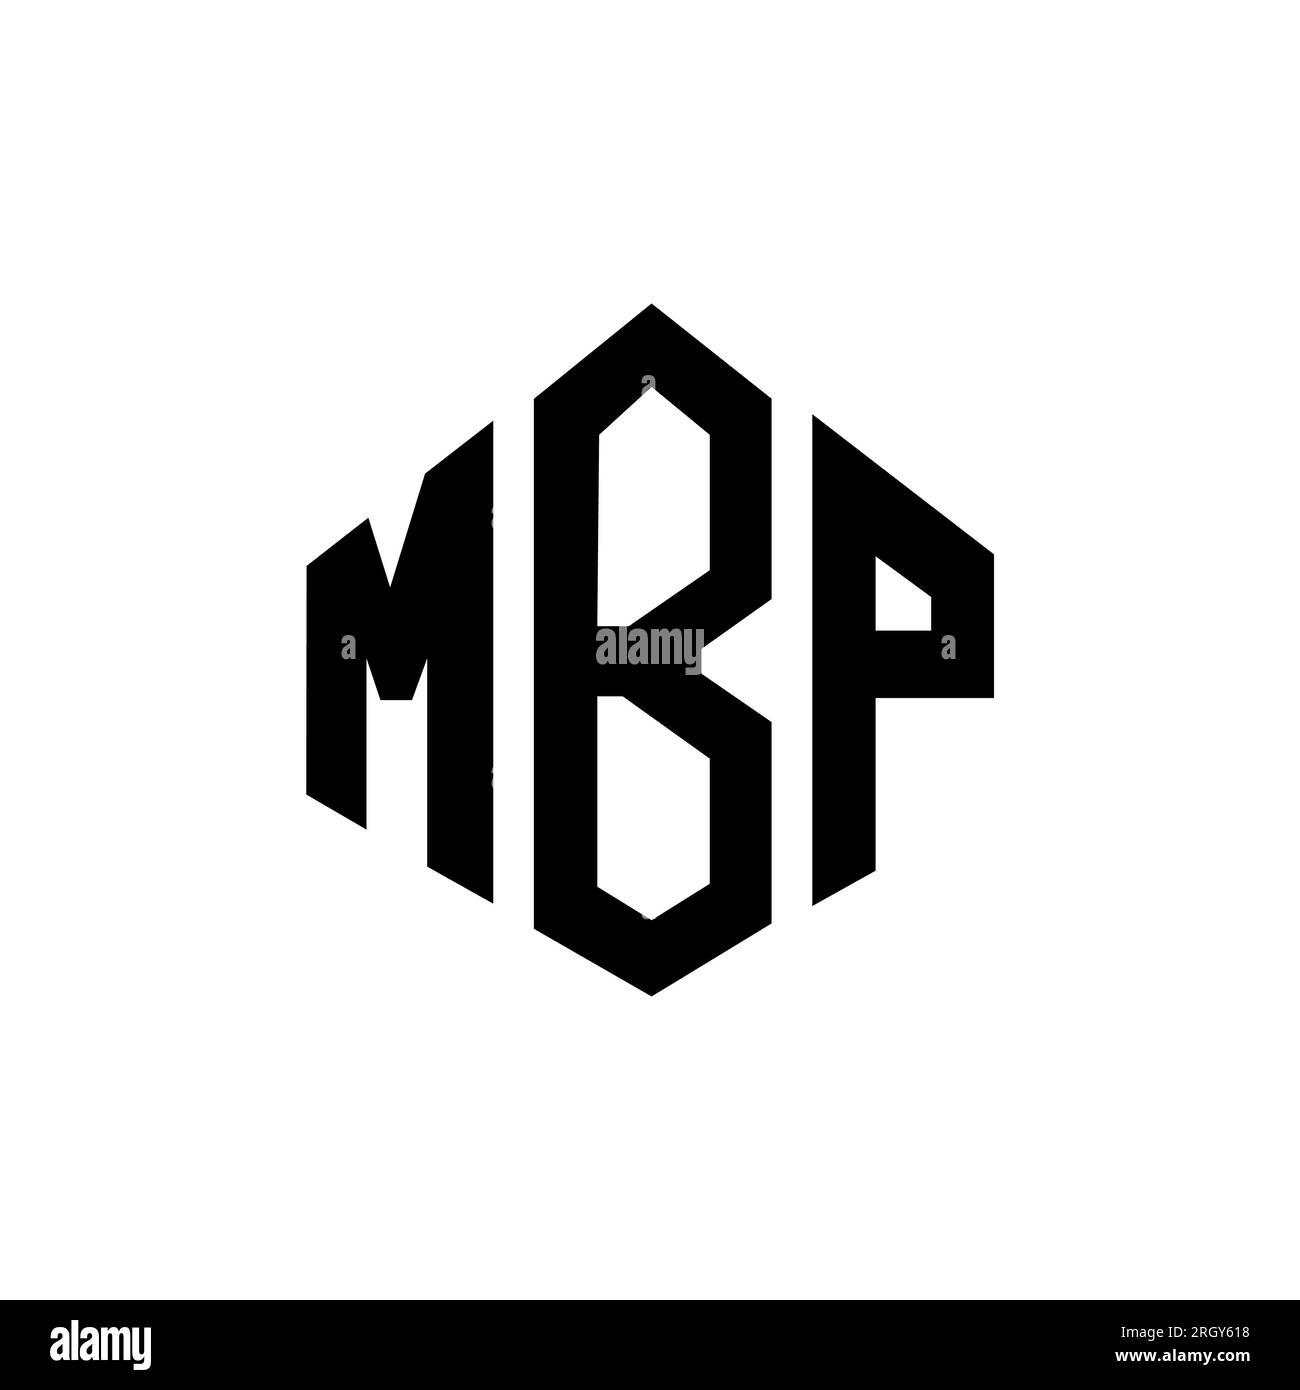 Logo mbp Banque d'images détourées - Alamy